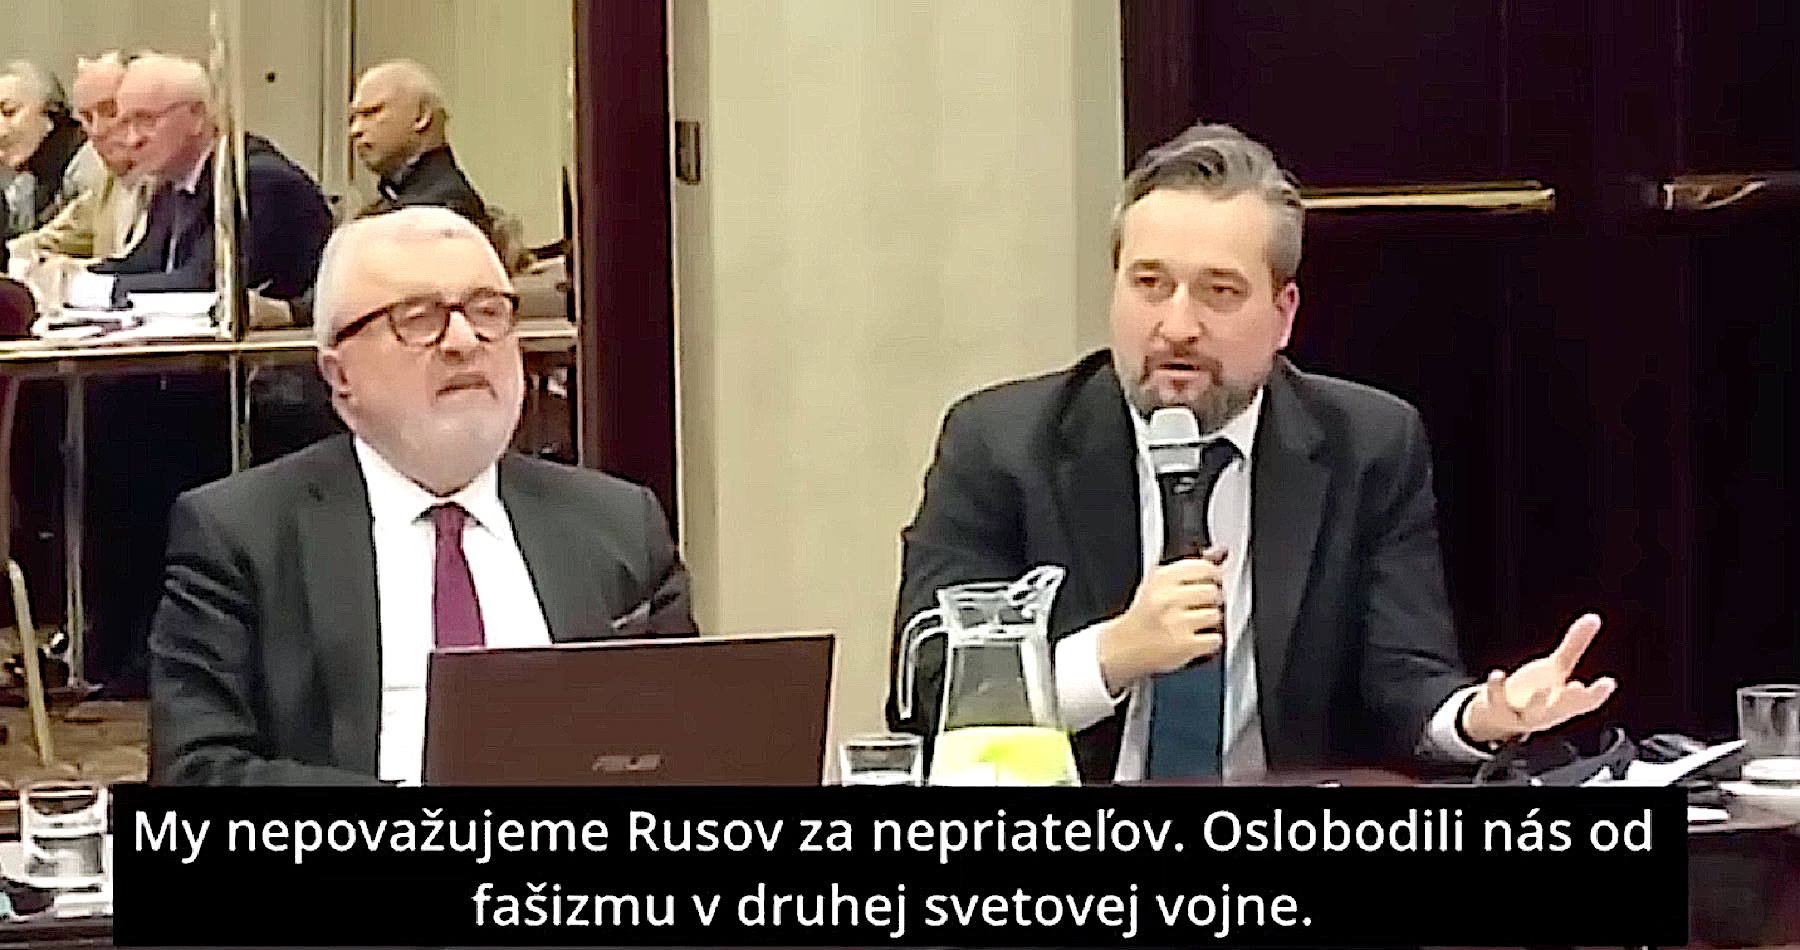 VIDEO: Slovensko sa stáva symbolom mieru v celej Európe. Blaha zverejnil svoj príhovor z medzinárodnej konferencie, ktorá sa konala v Bratislave pod jeho záštitou ako námestníka šéfa parlamentu